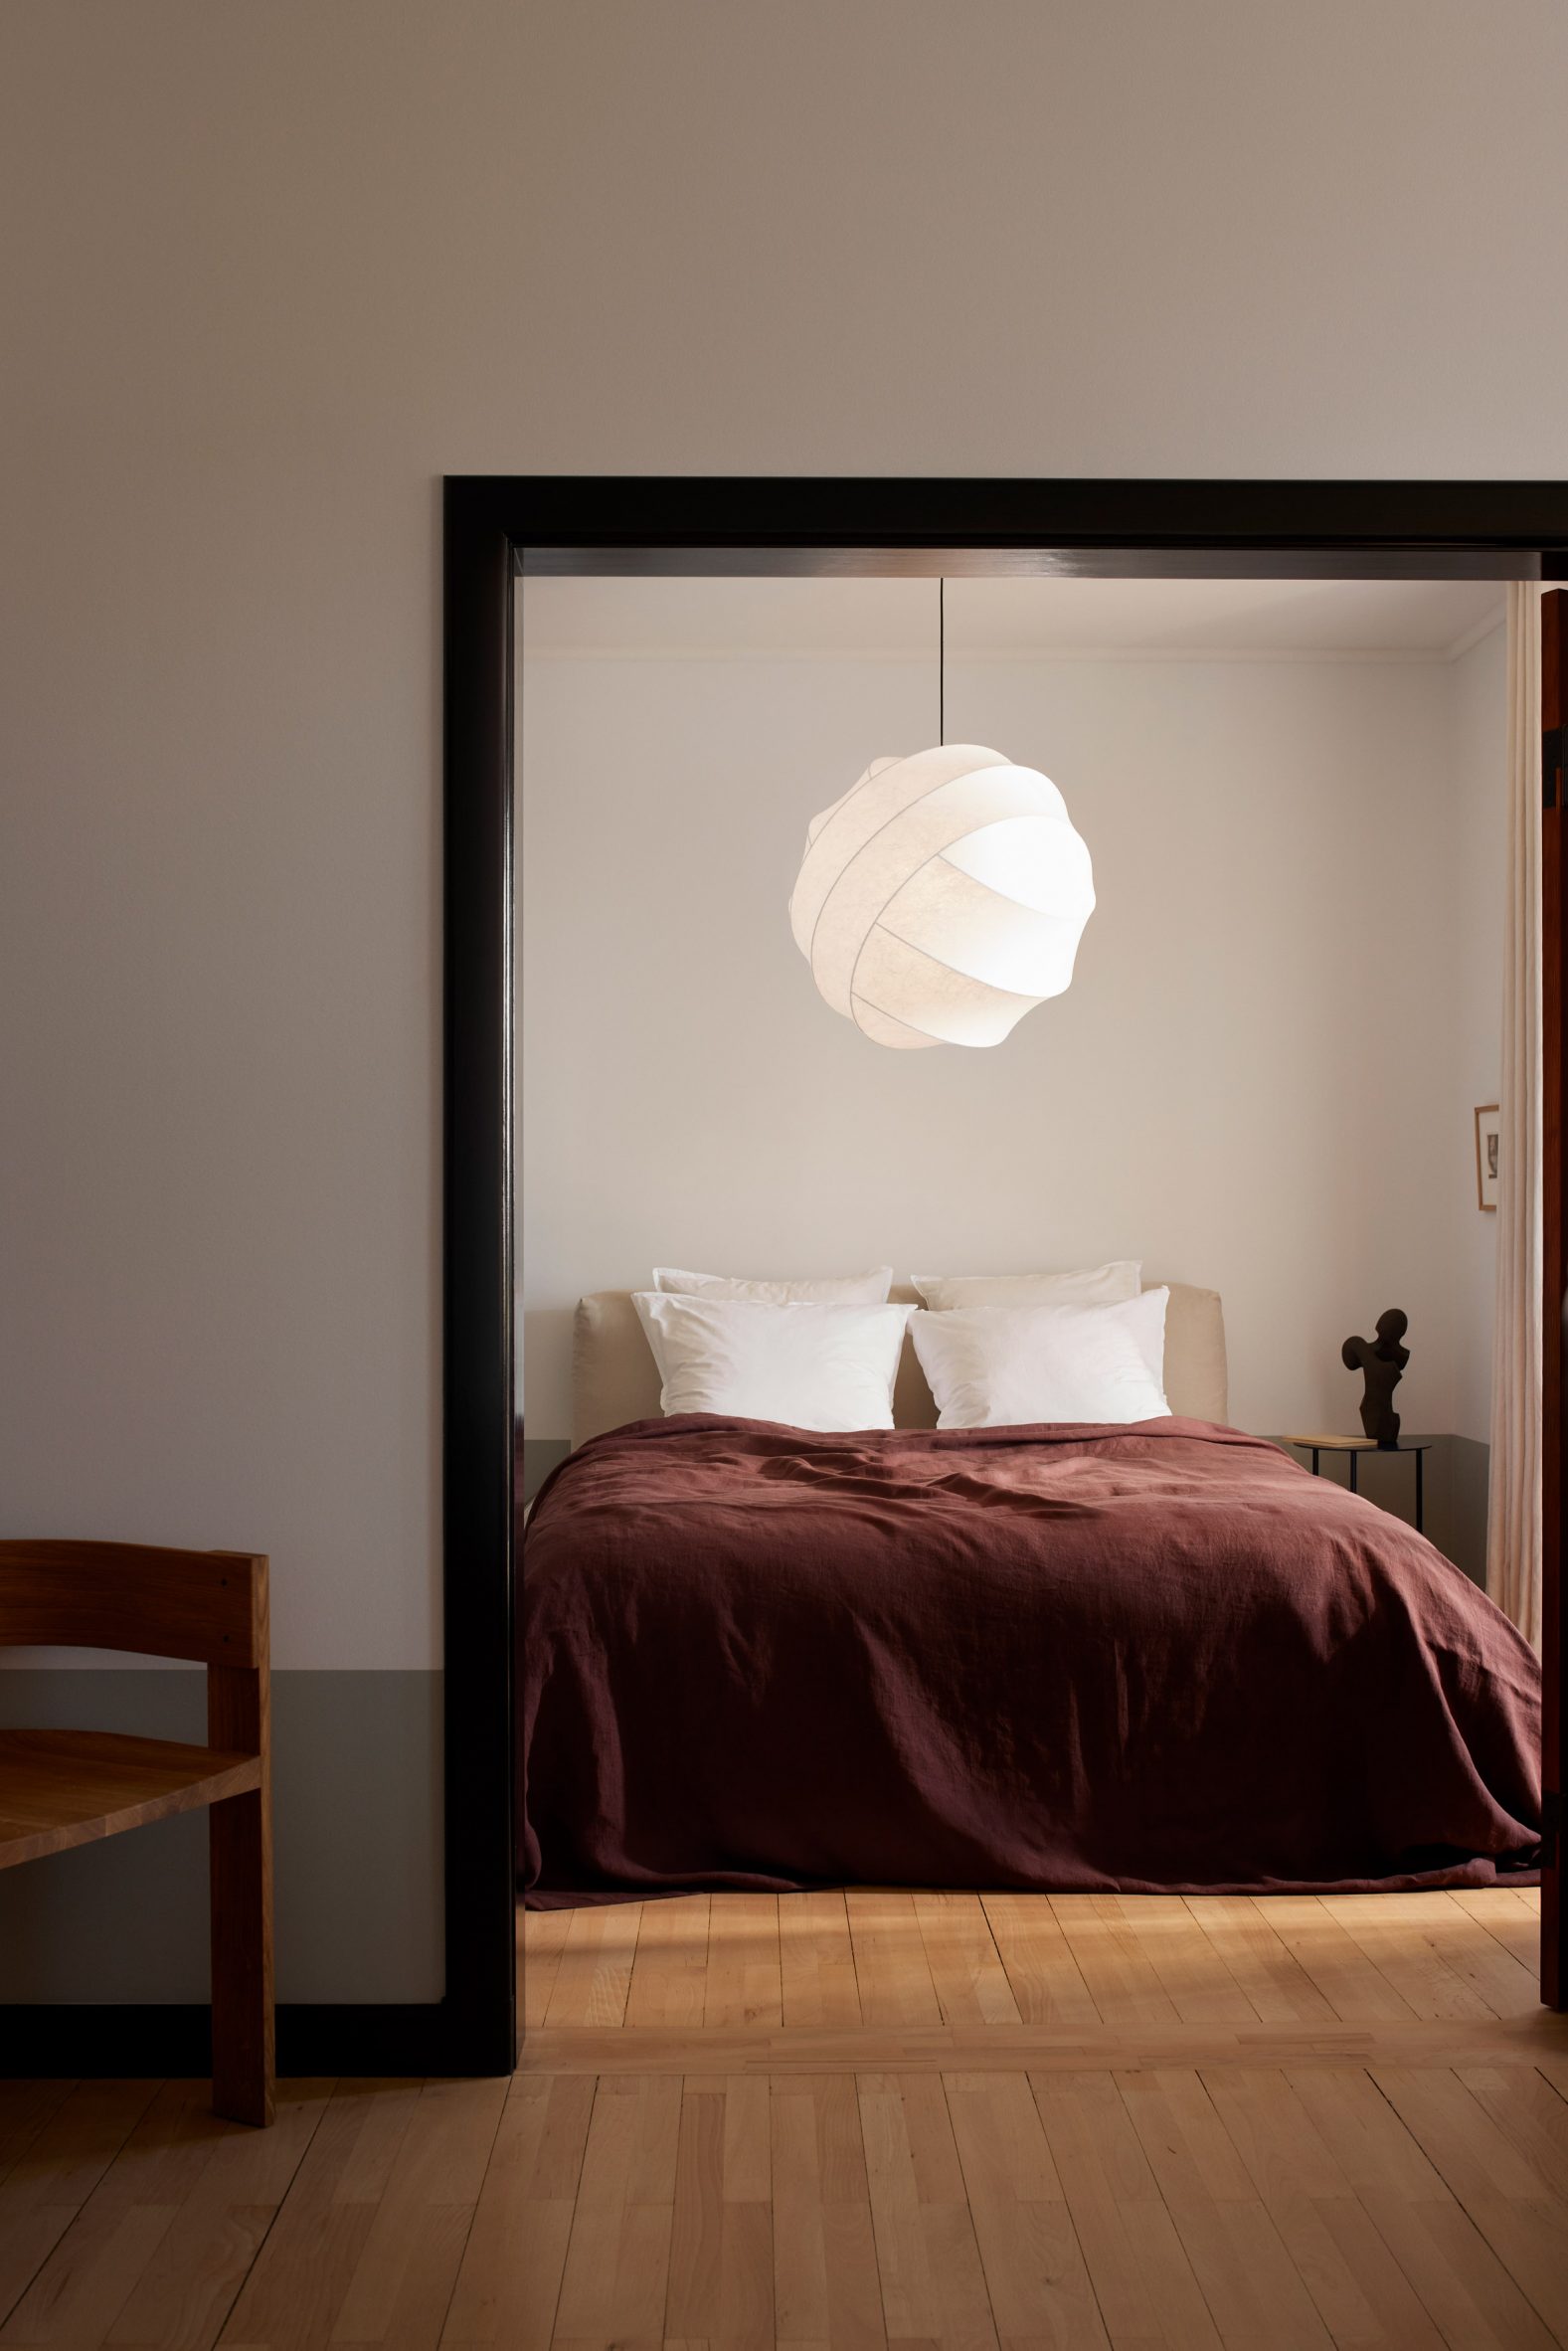 Turner light hanging in a bedroom